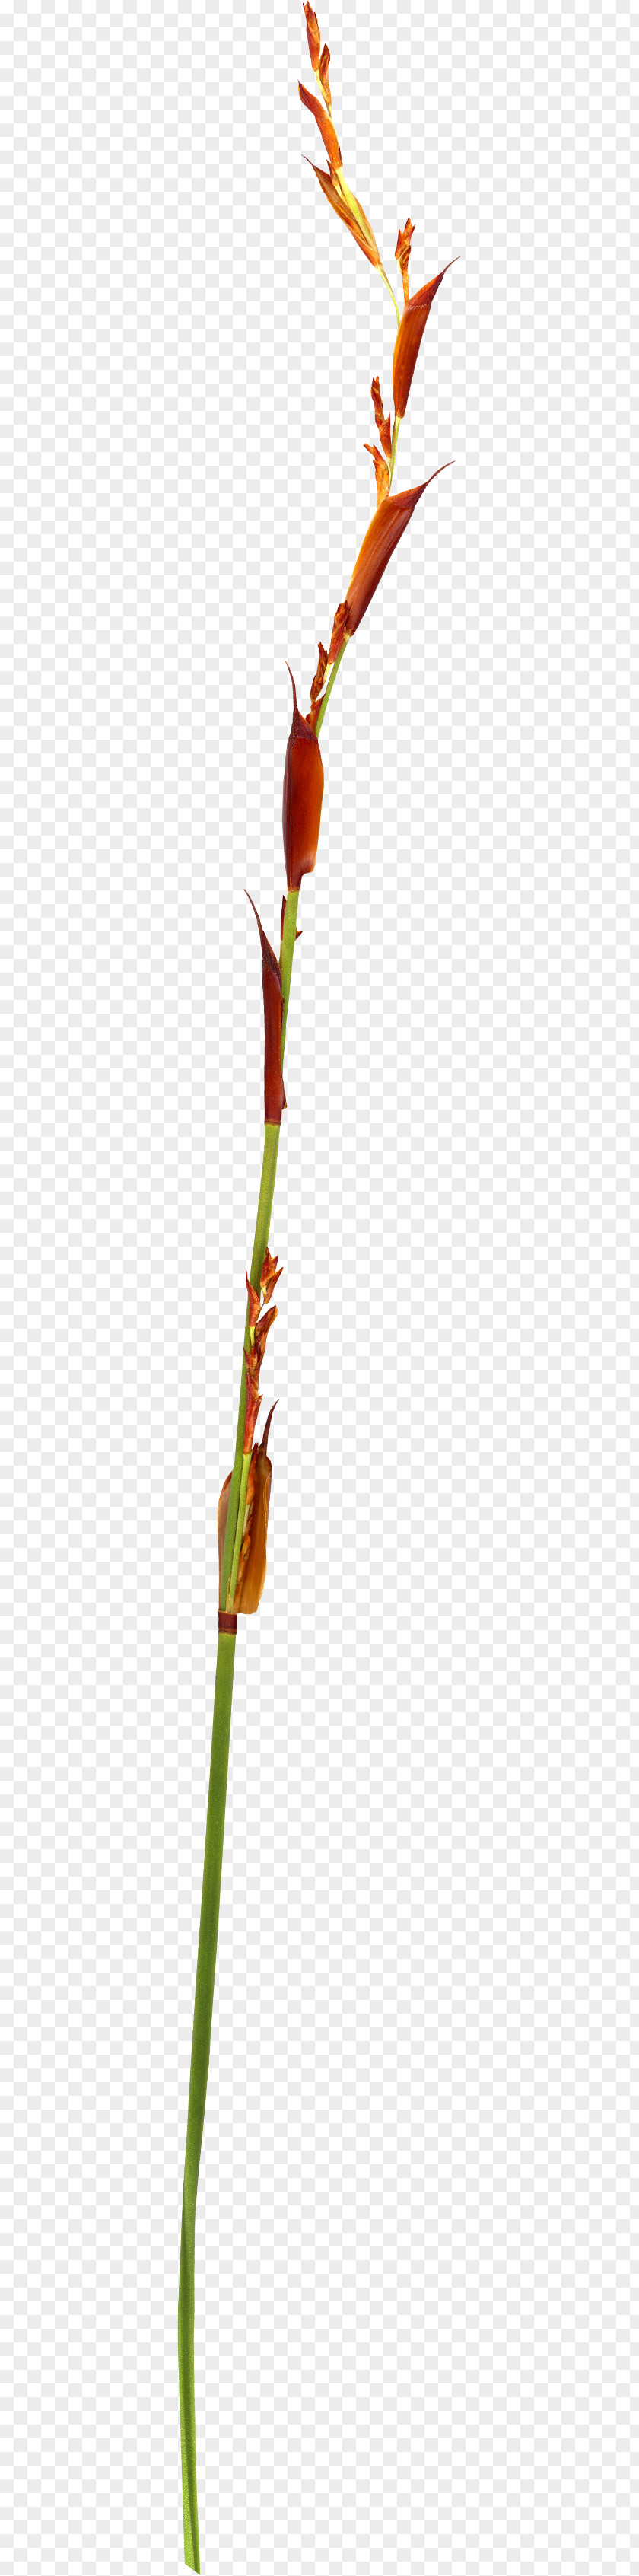 Leaf Twig Plant Stem Bud PNG